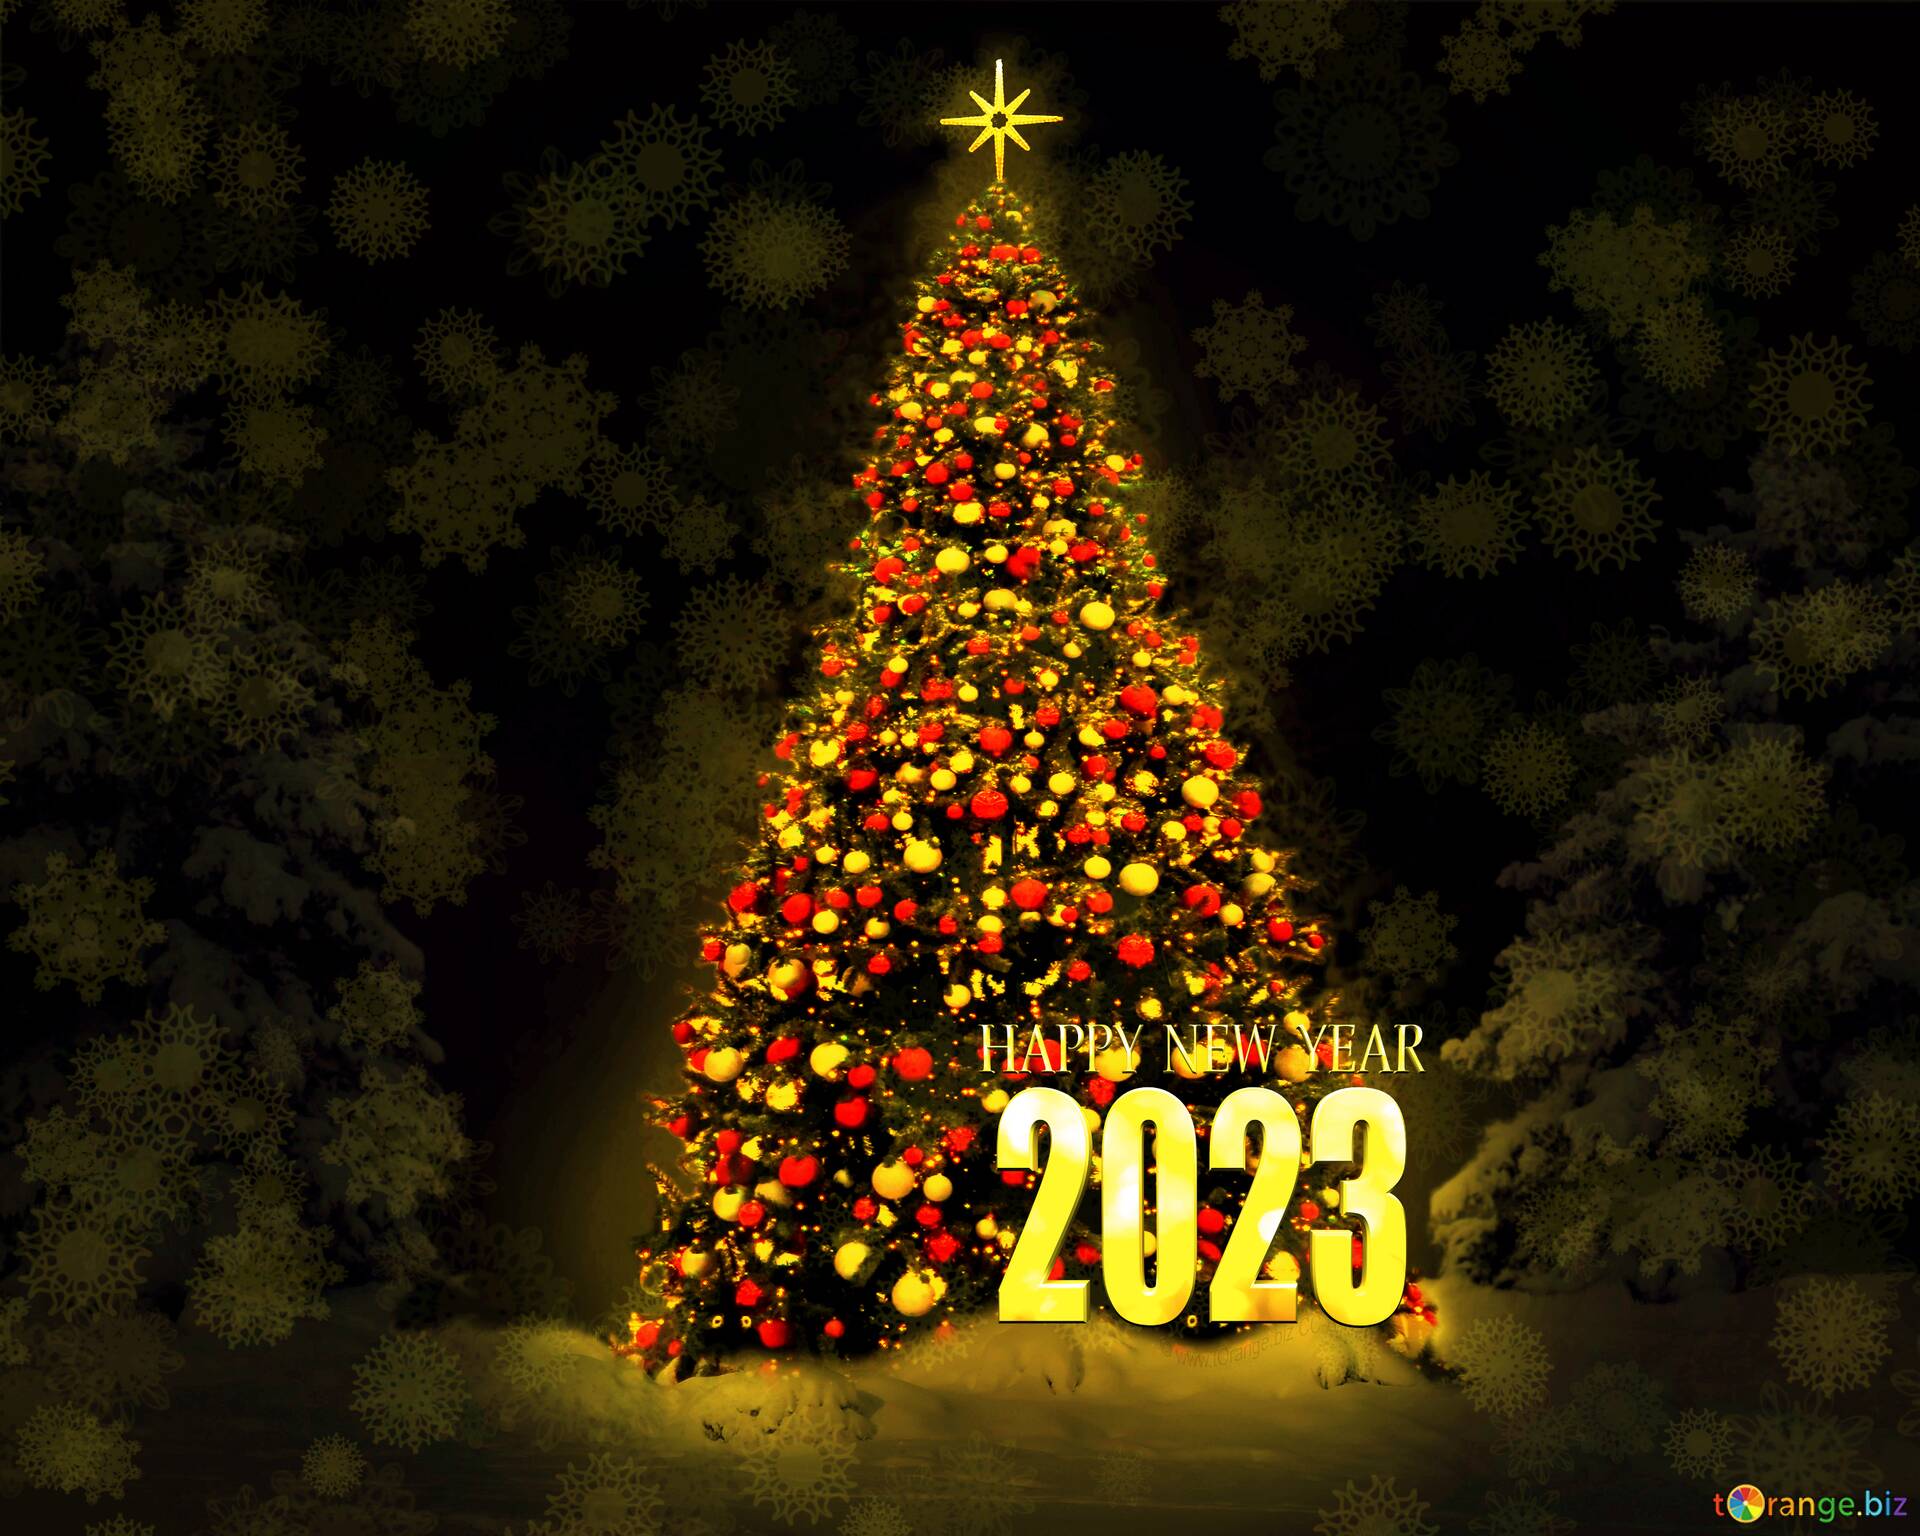 Новогодняя 2022 Год